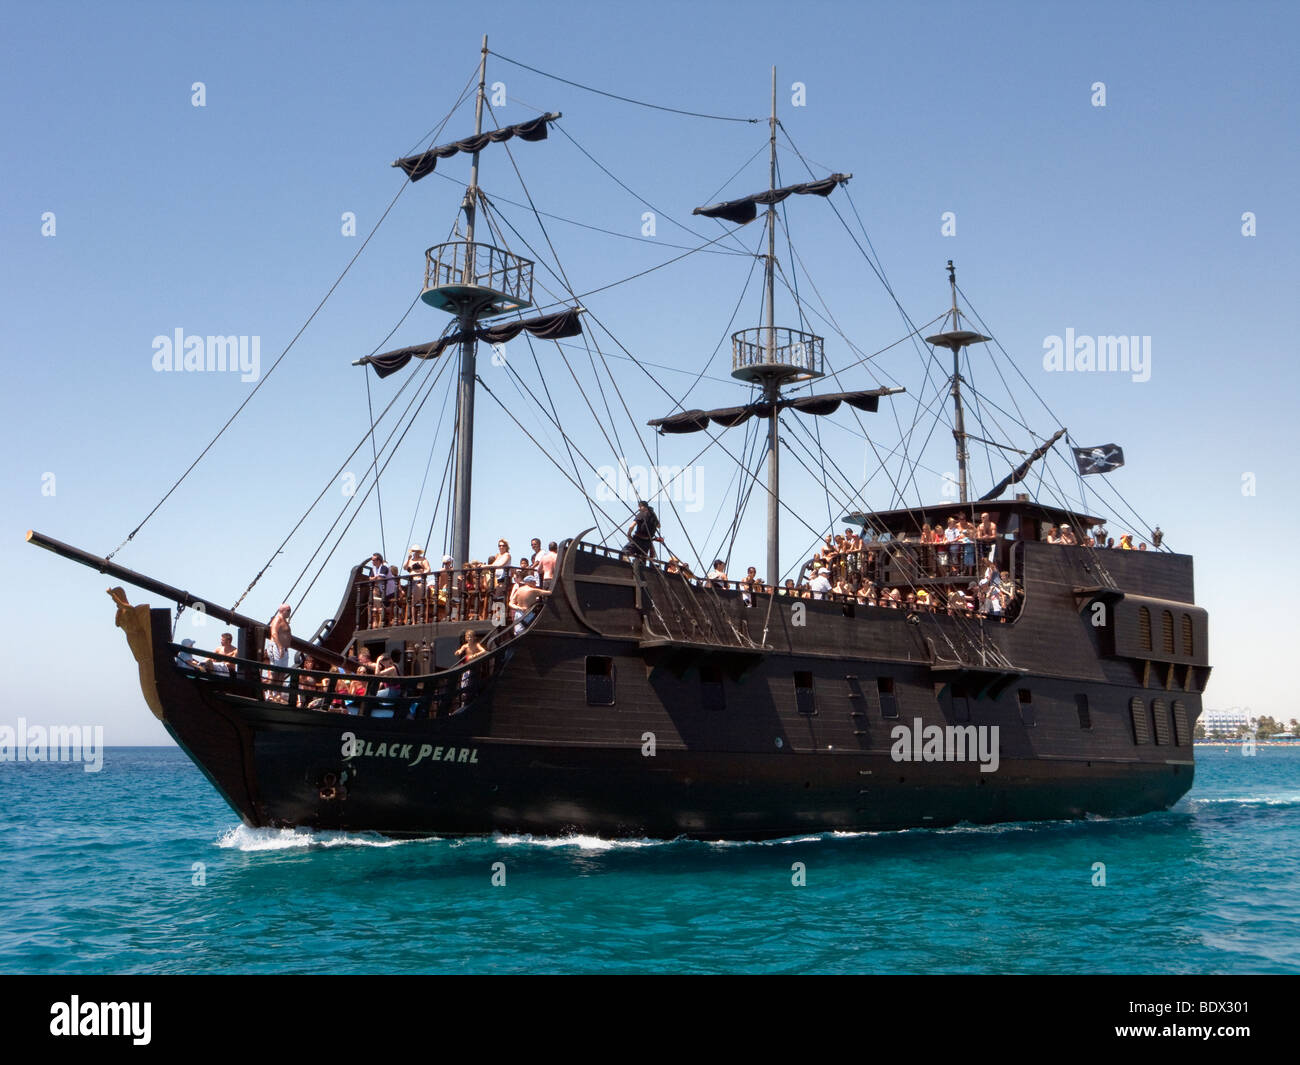 Le Black Pearl, un navire de croisière de jour touristique à Ayia Napa, Chypre. Banque D'Images